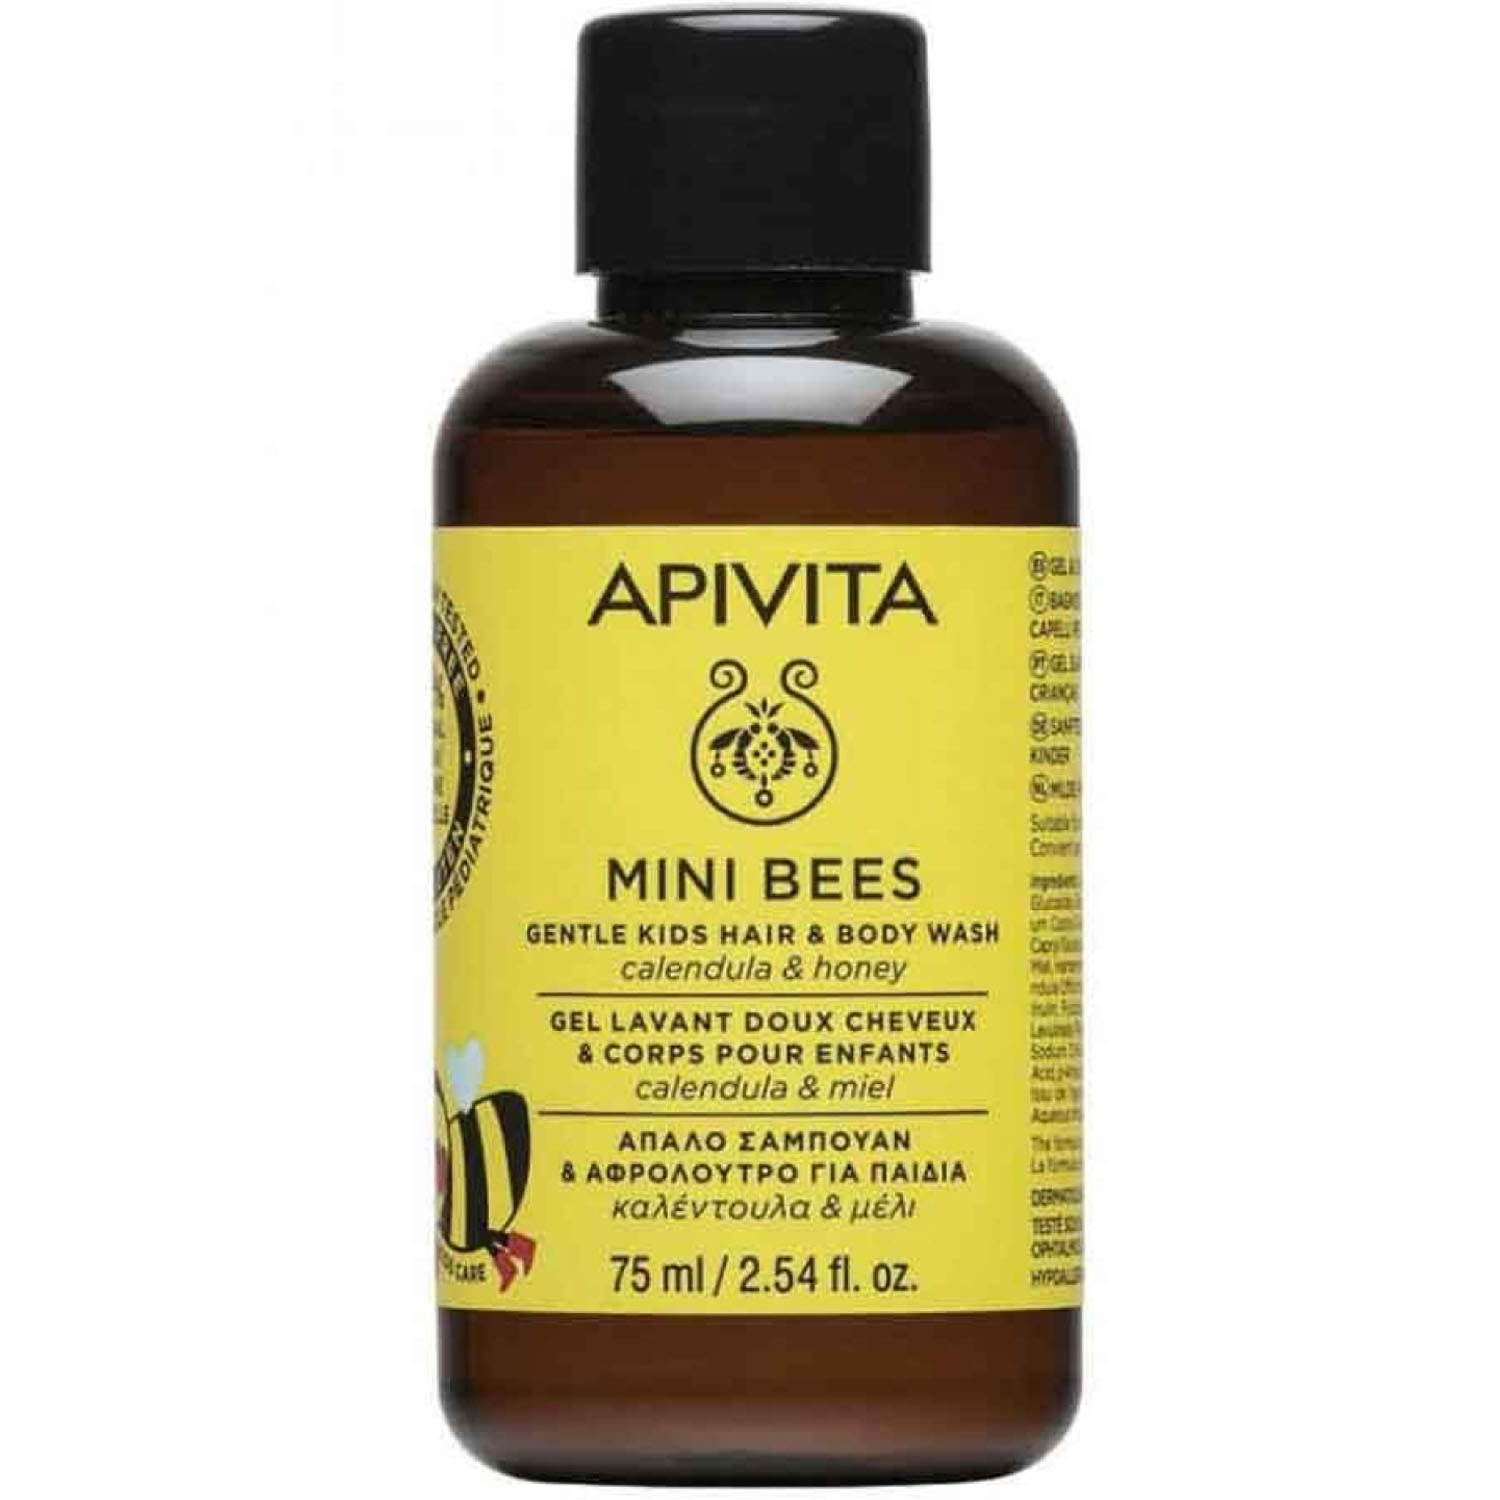 Apivita Детский нежный очищающий гель для тела и волос с Календулой и Мёдом, 75 мл (Apivita, Mini Bees)